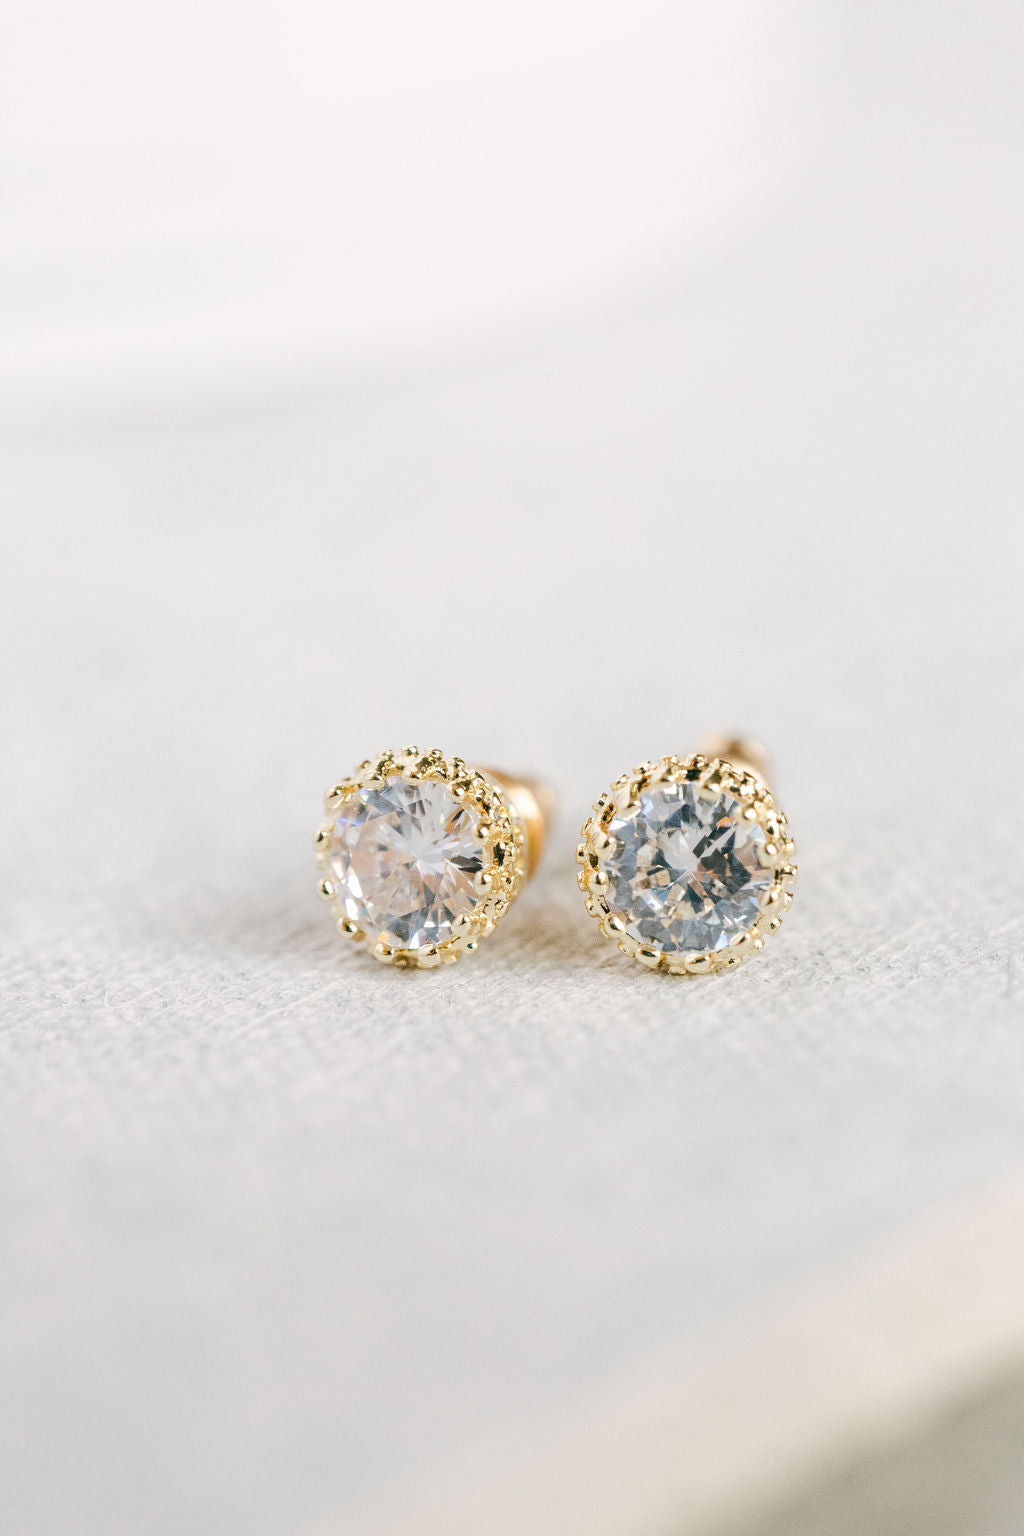 Pearl Drop Earrings (Silver) – Rosie & Dott